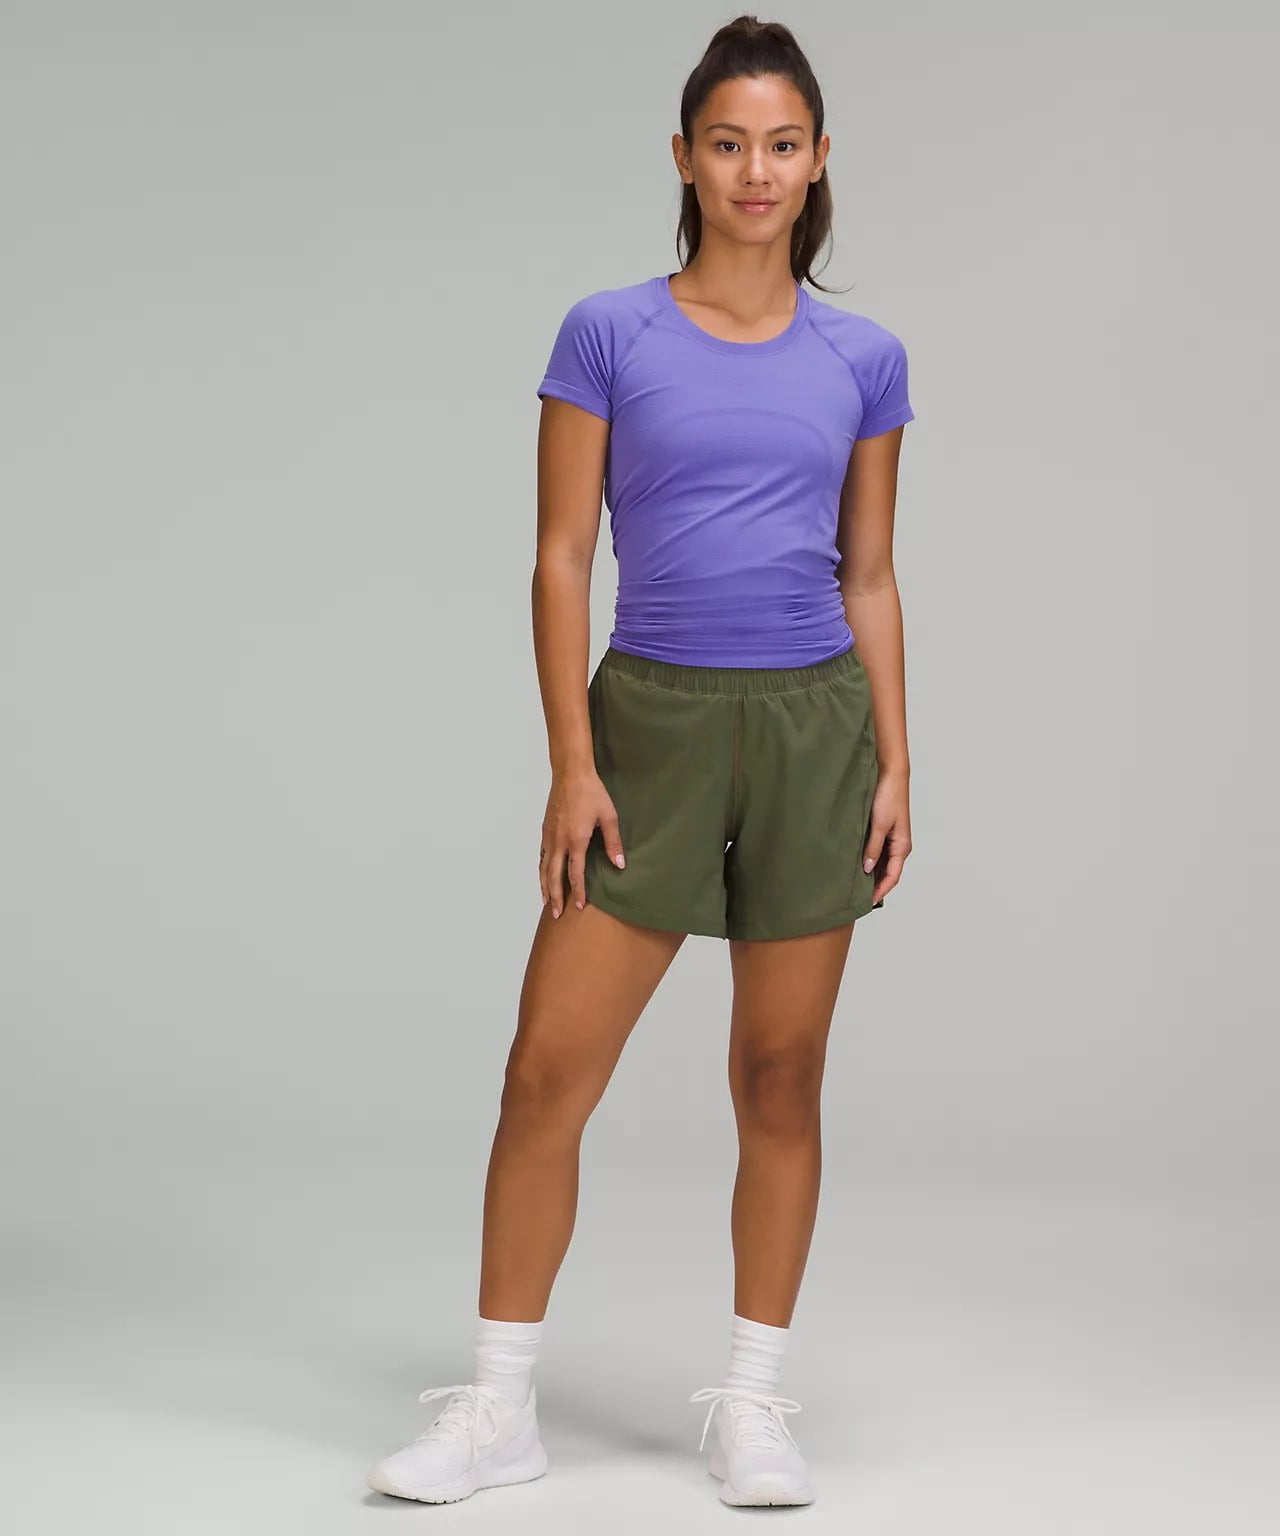 lululemon women's shorts - Track That High-Rise Lined Short 5 - lululemon long running shorts - longer inseam running shorts 2